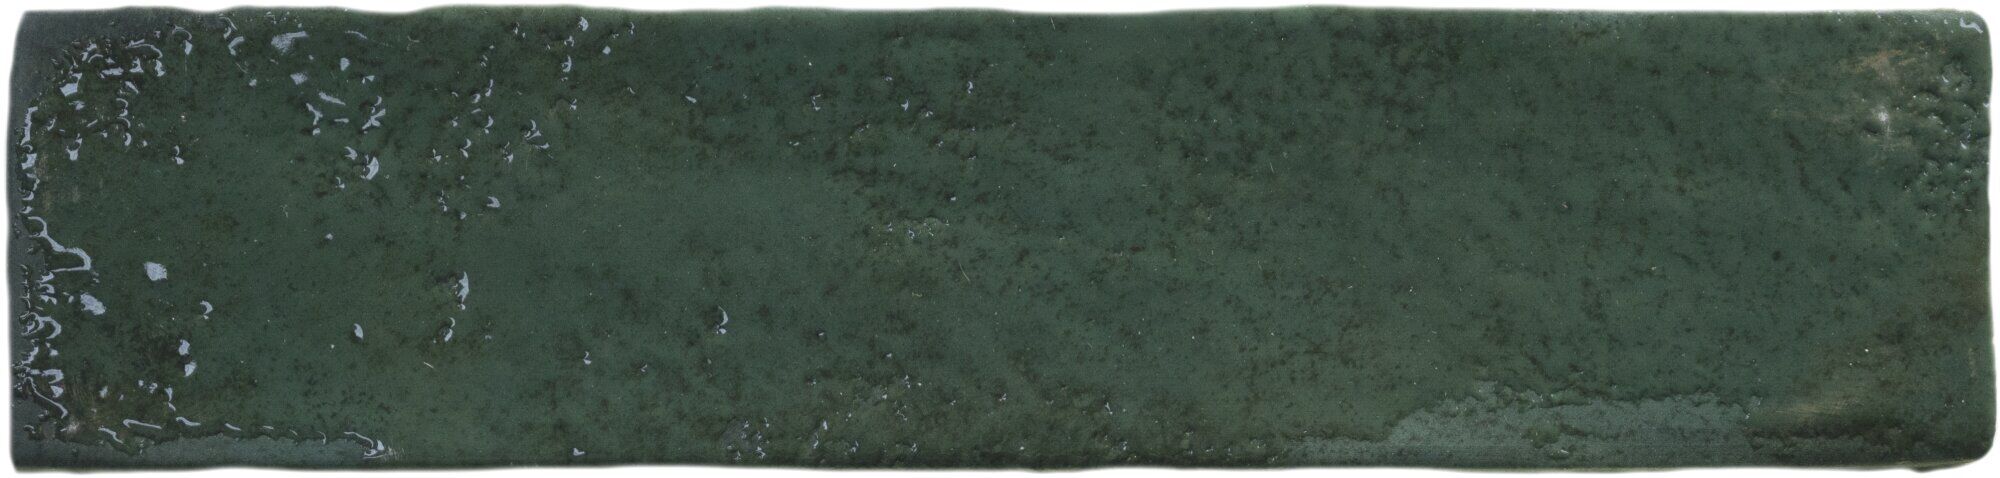 Керамическая плитка Керамин Harmony Sunset Green Зеленая Глянцевая Настенная плитка 6x25